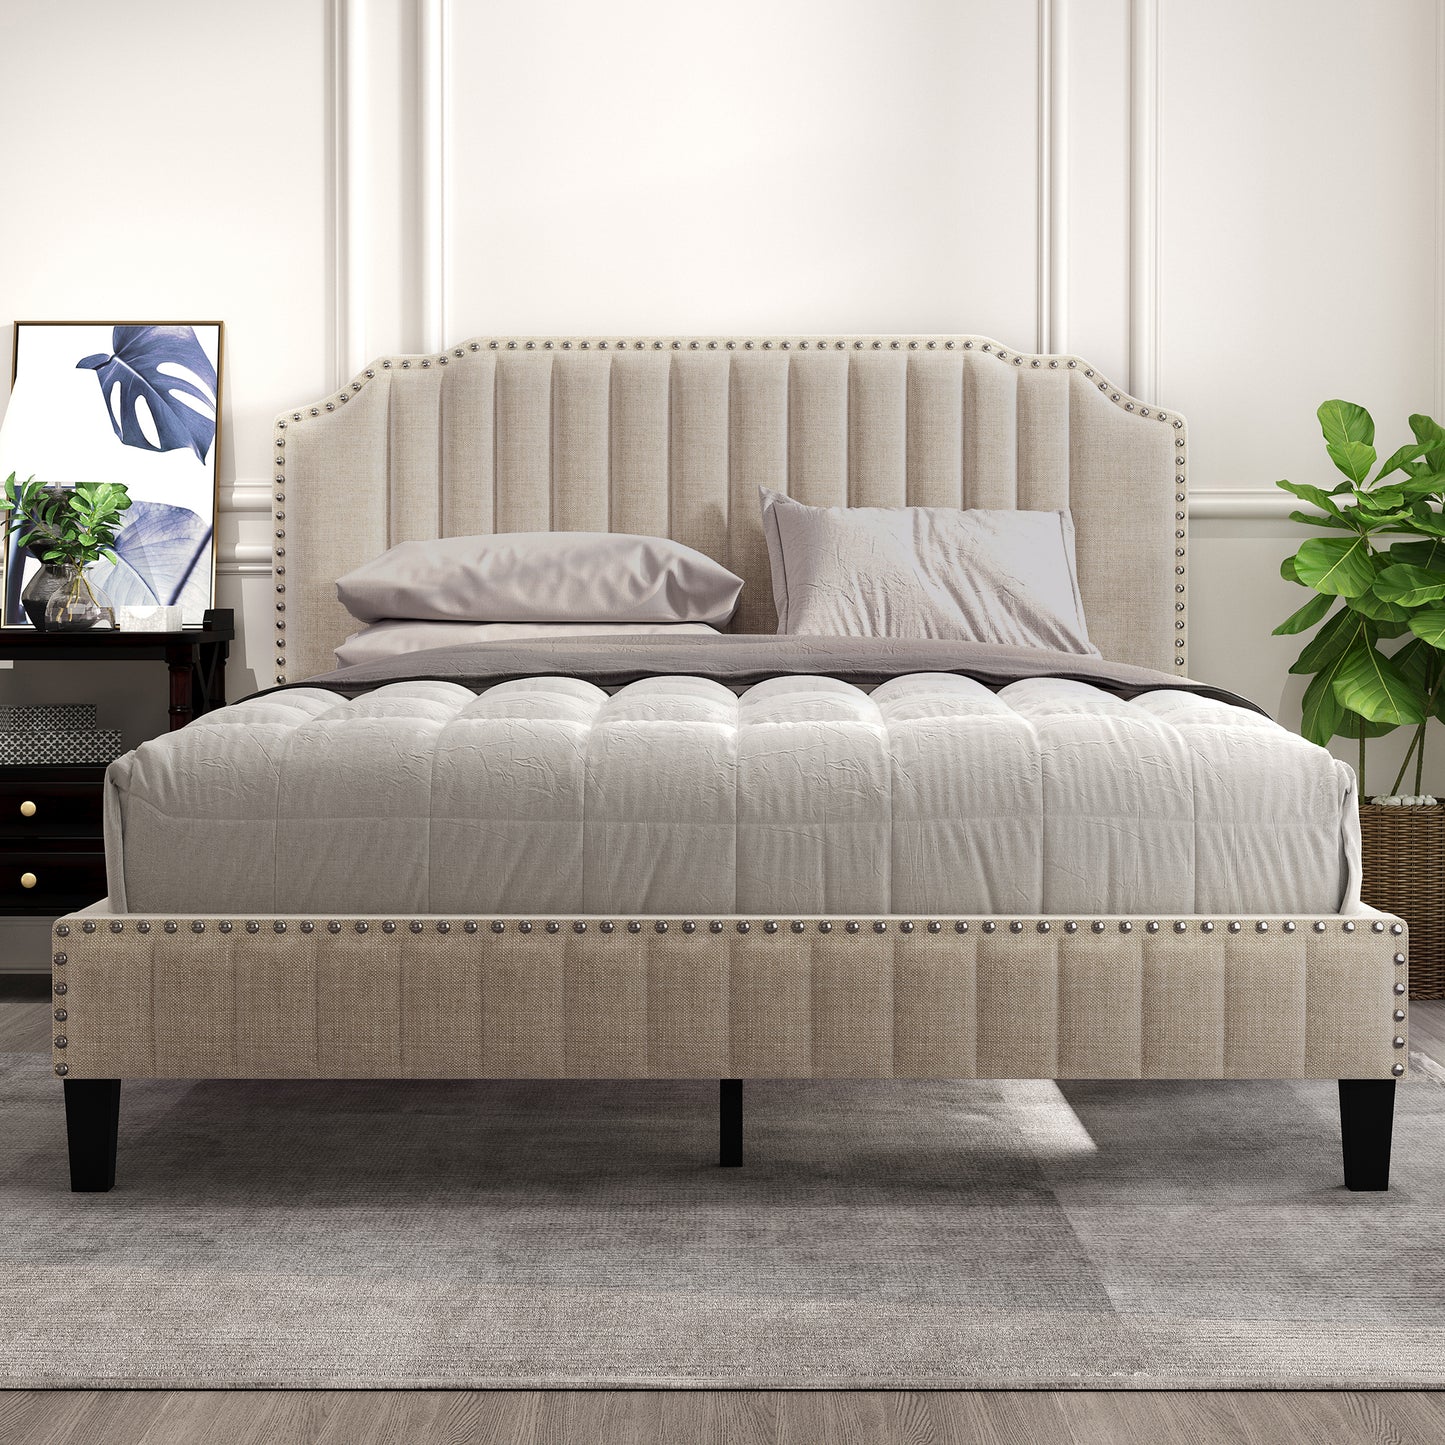 Modern Linen Curved Upholstered Platform Bed , Solid Wood Frame , Nailhead Trim, Beige (Queen)